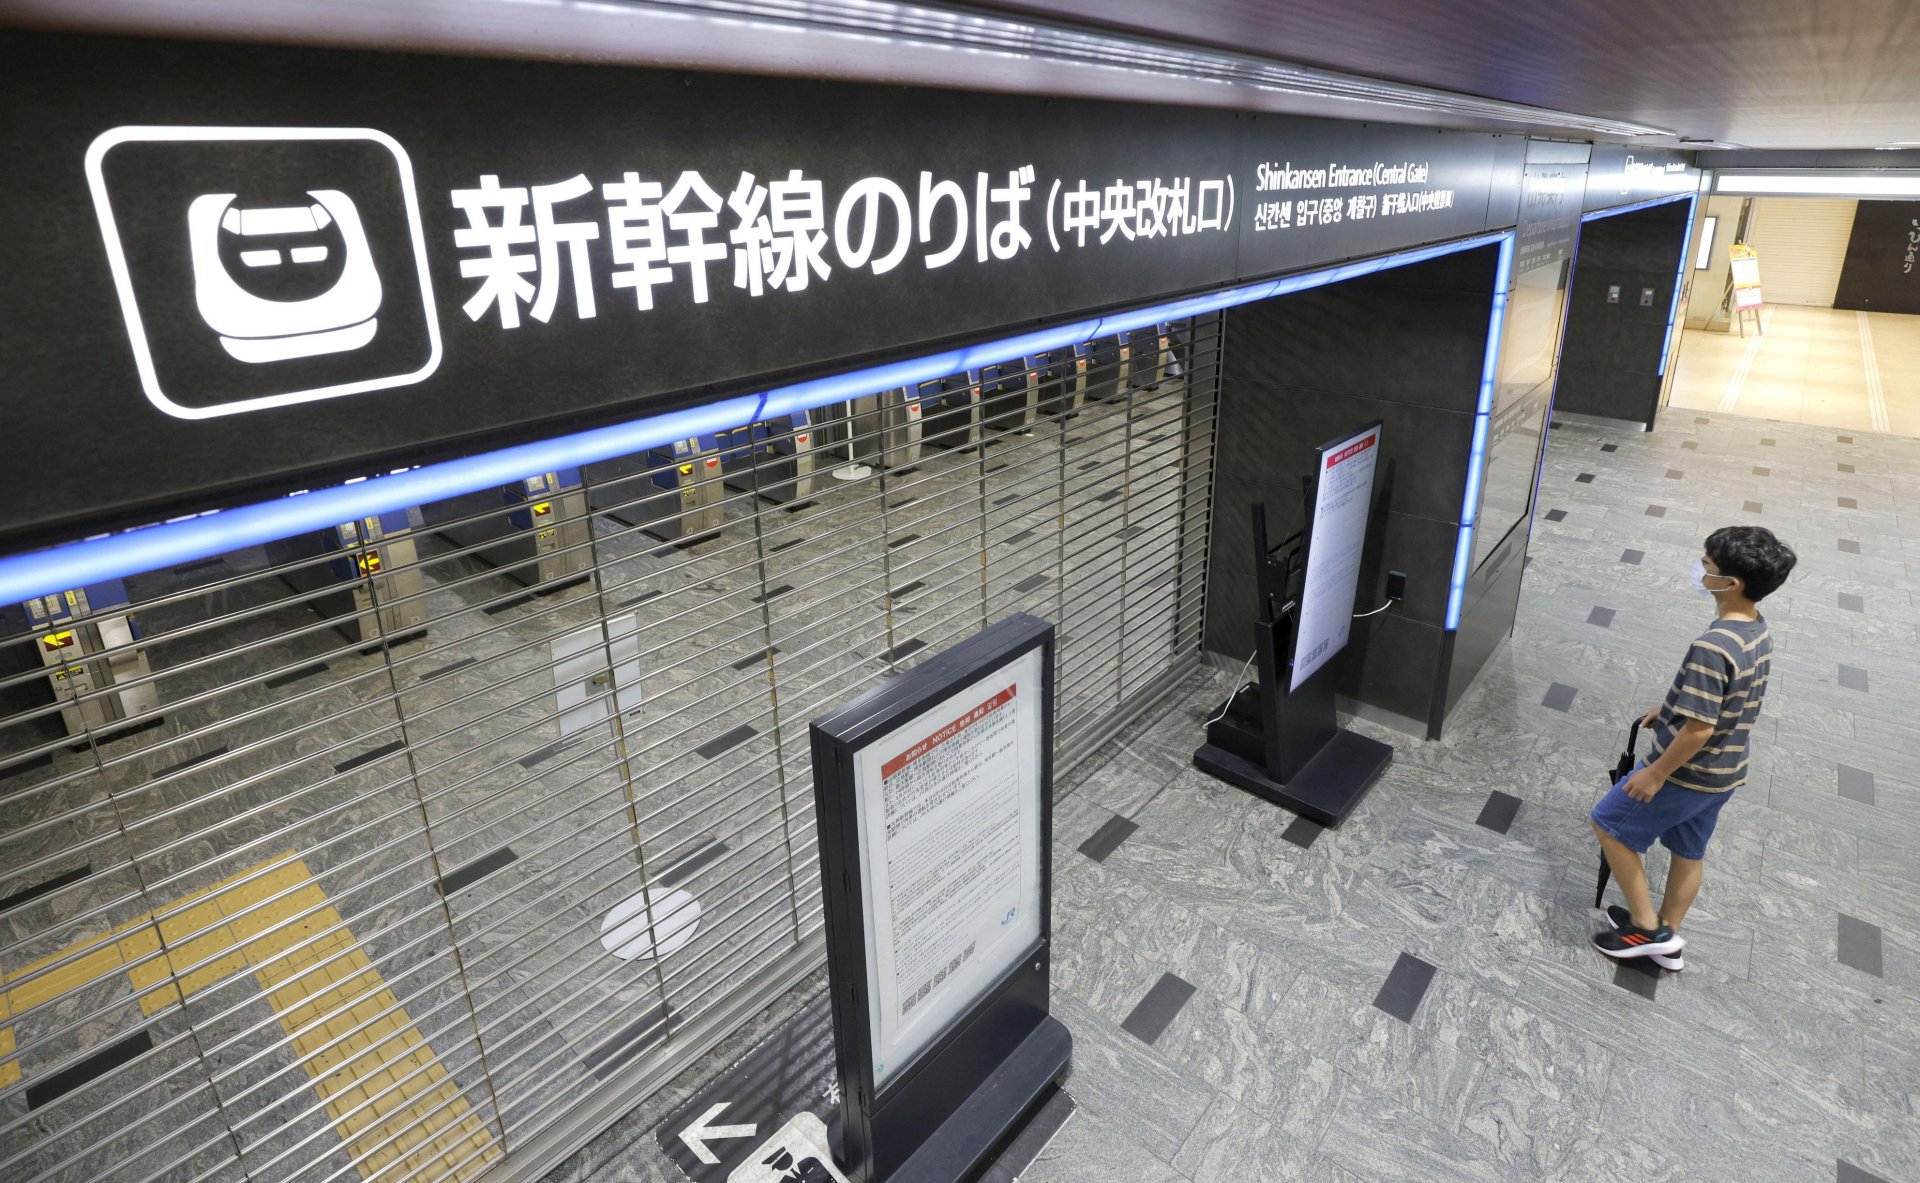 Входът на гарата на „Шинкансен“ или влака-стреля е затворен поради мощен тайфун, ударил района на гара Хаката във Фукуока, западна Япония, понеделник